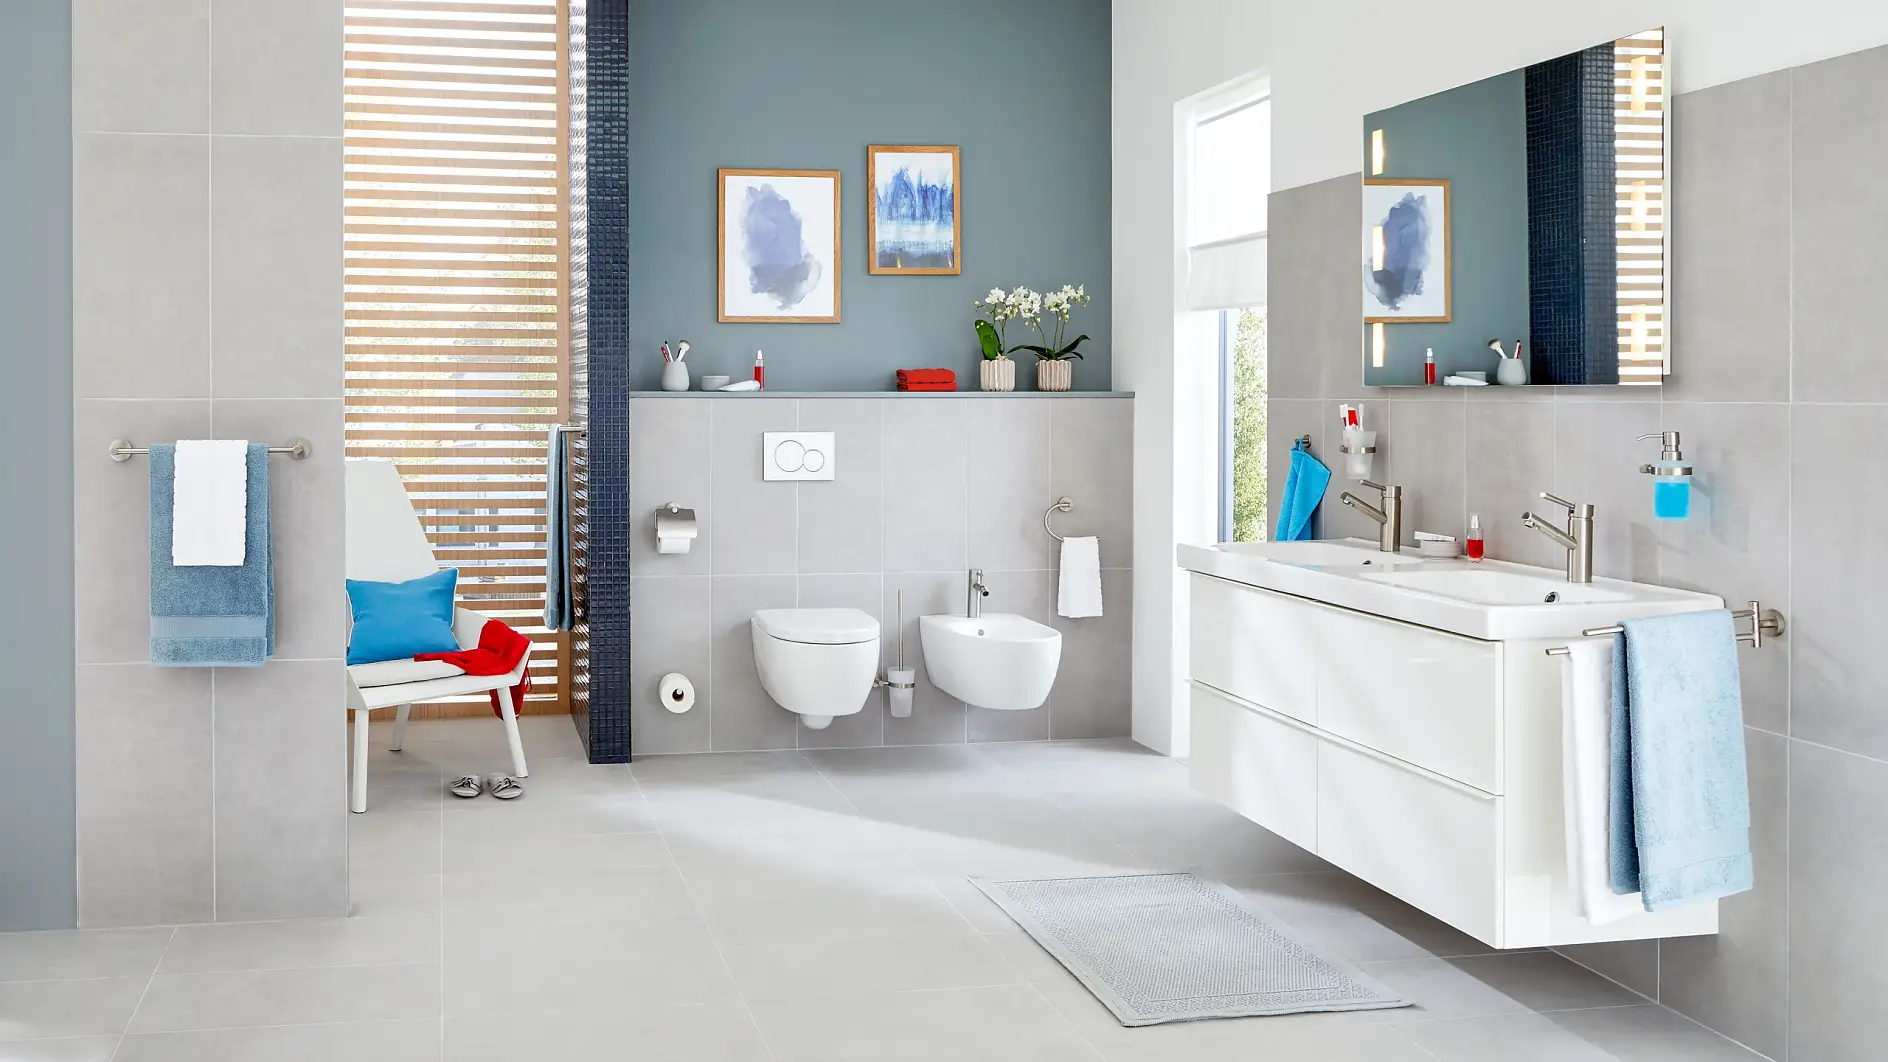 Ontwerpen om de exclusieve uitstraling van jouw badkamer te perfectioneren.